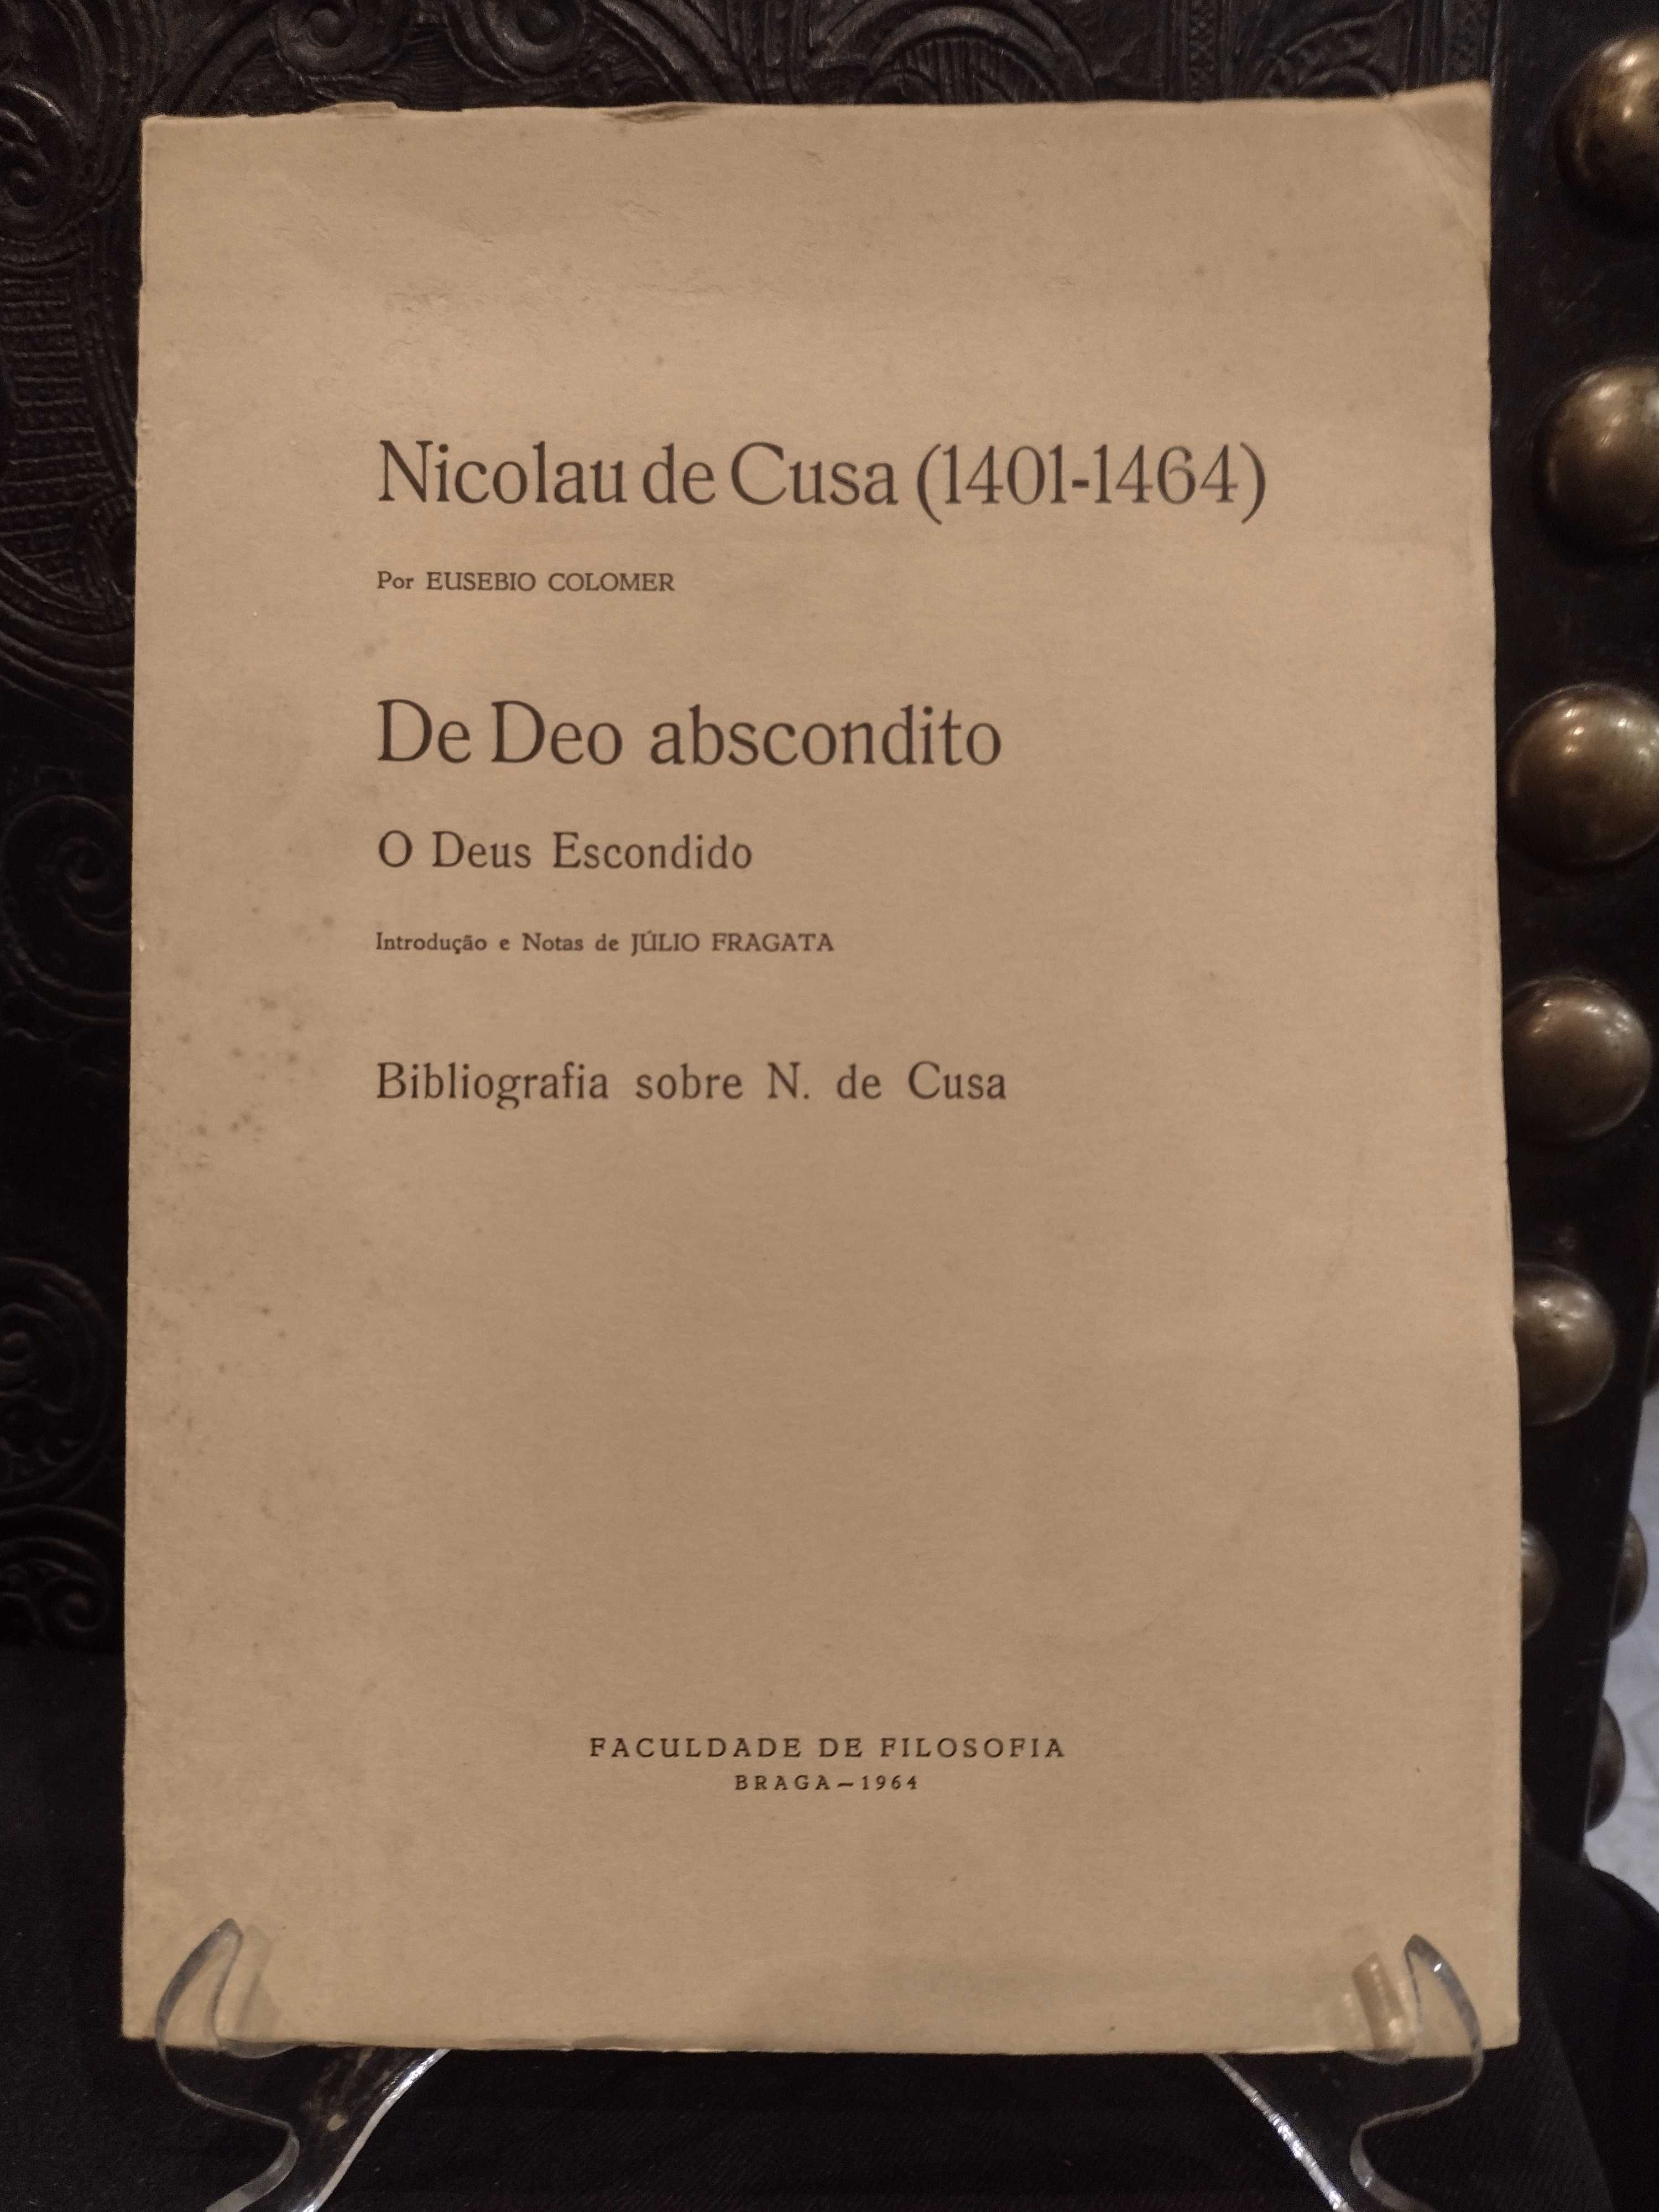 Bibliografia Nicolau de Cusa (1401/1464) Eusebio Colomer